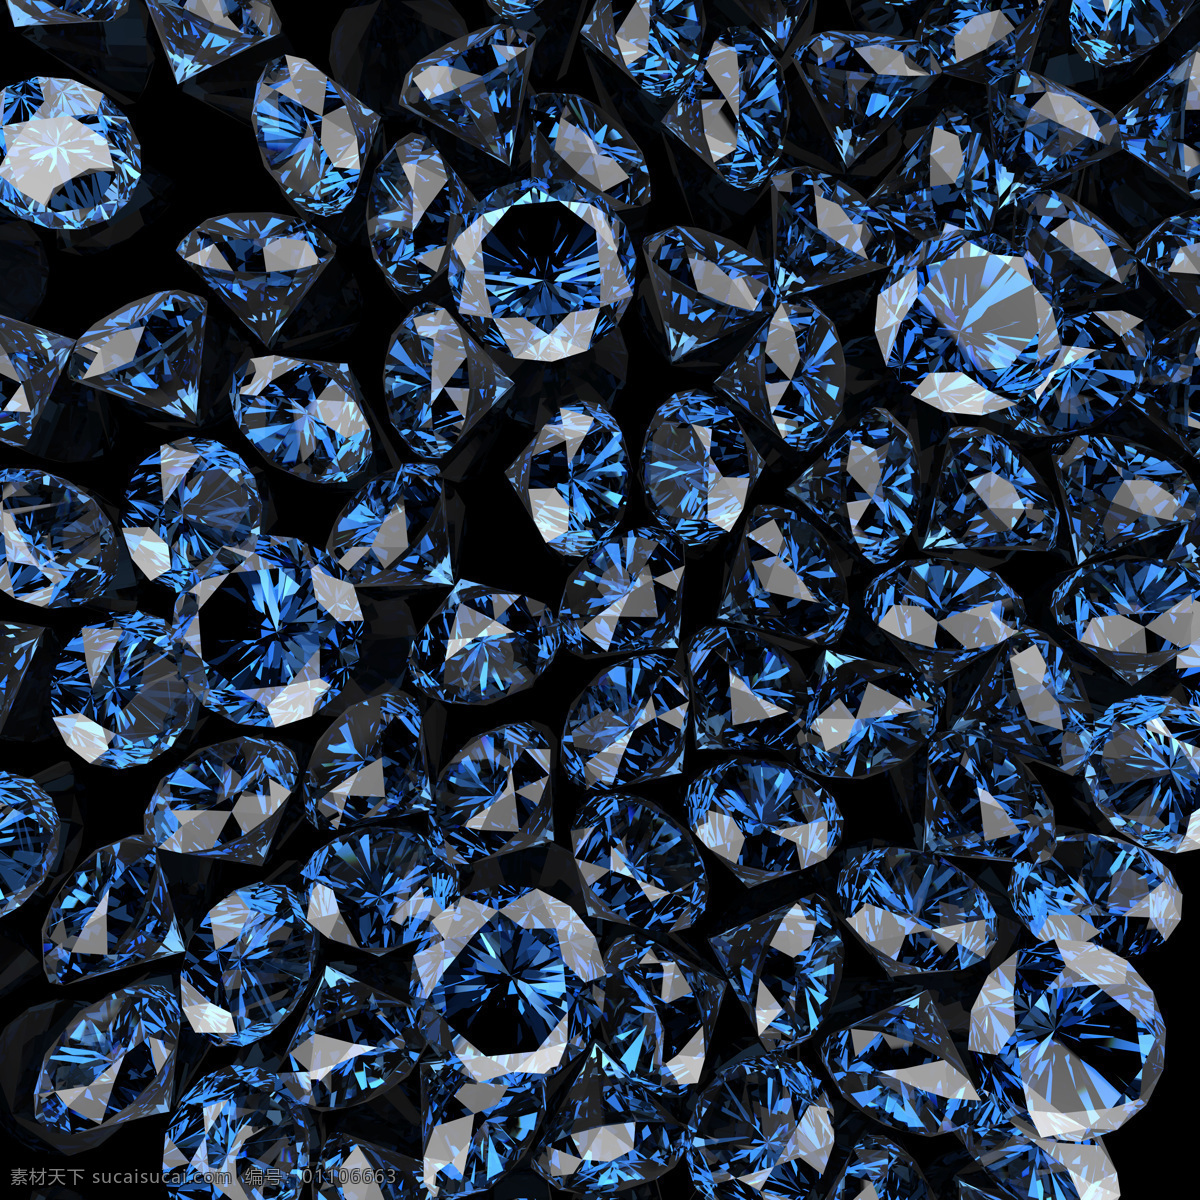 蓝色 钻石 背景 蓝色钻石 钻石背景 钻石摄影 钻石素材 珠宝 饰品 首饰 珠宝服饰 生活百科